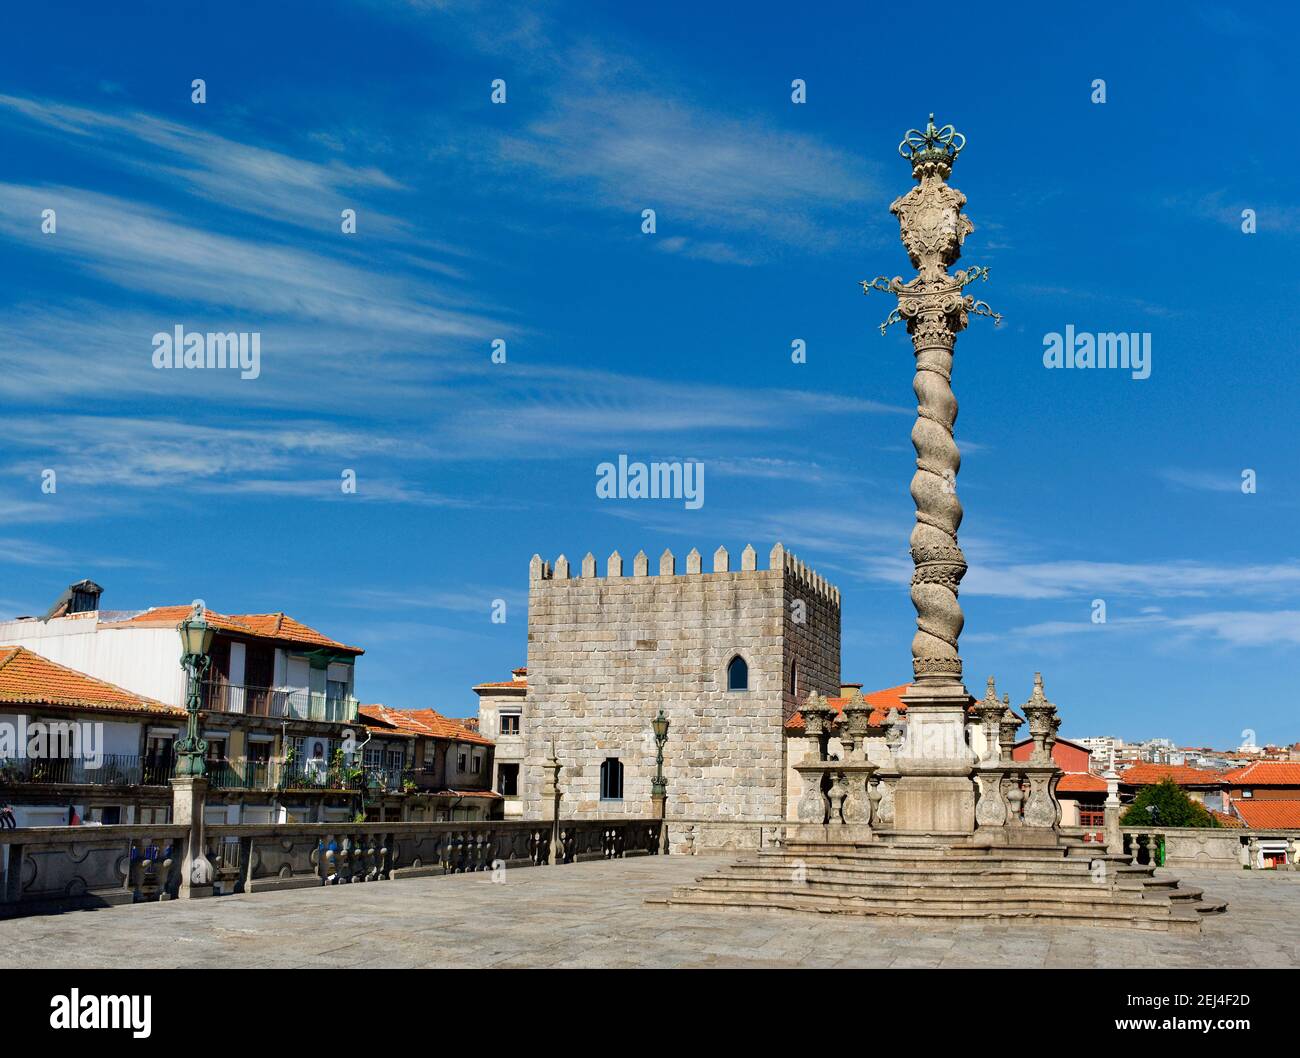 Portugal, Porto, la colonne ornée, ou pilori (pelourinho) dans la place de la cathédrale - le Terreiro da Sé - avec une tour médiévale restaurée Banque D'Images